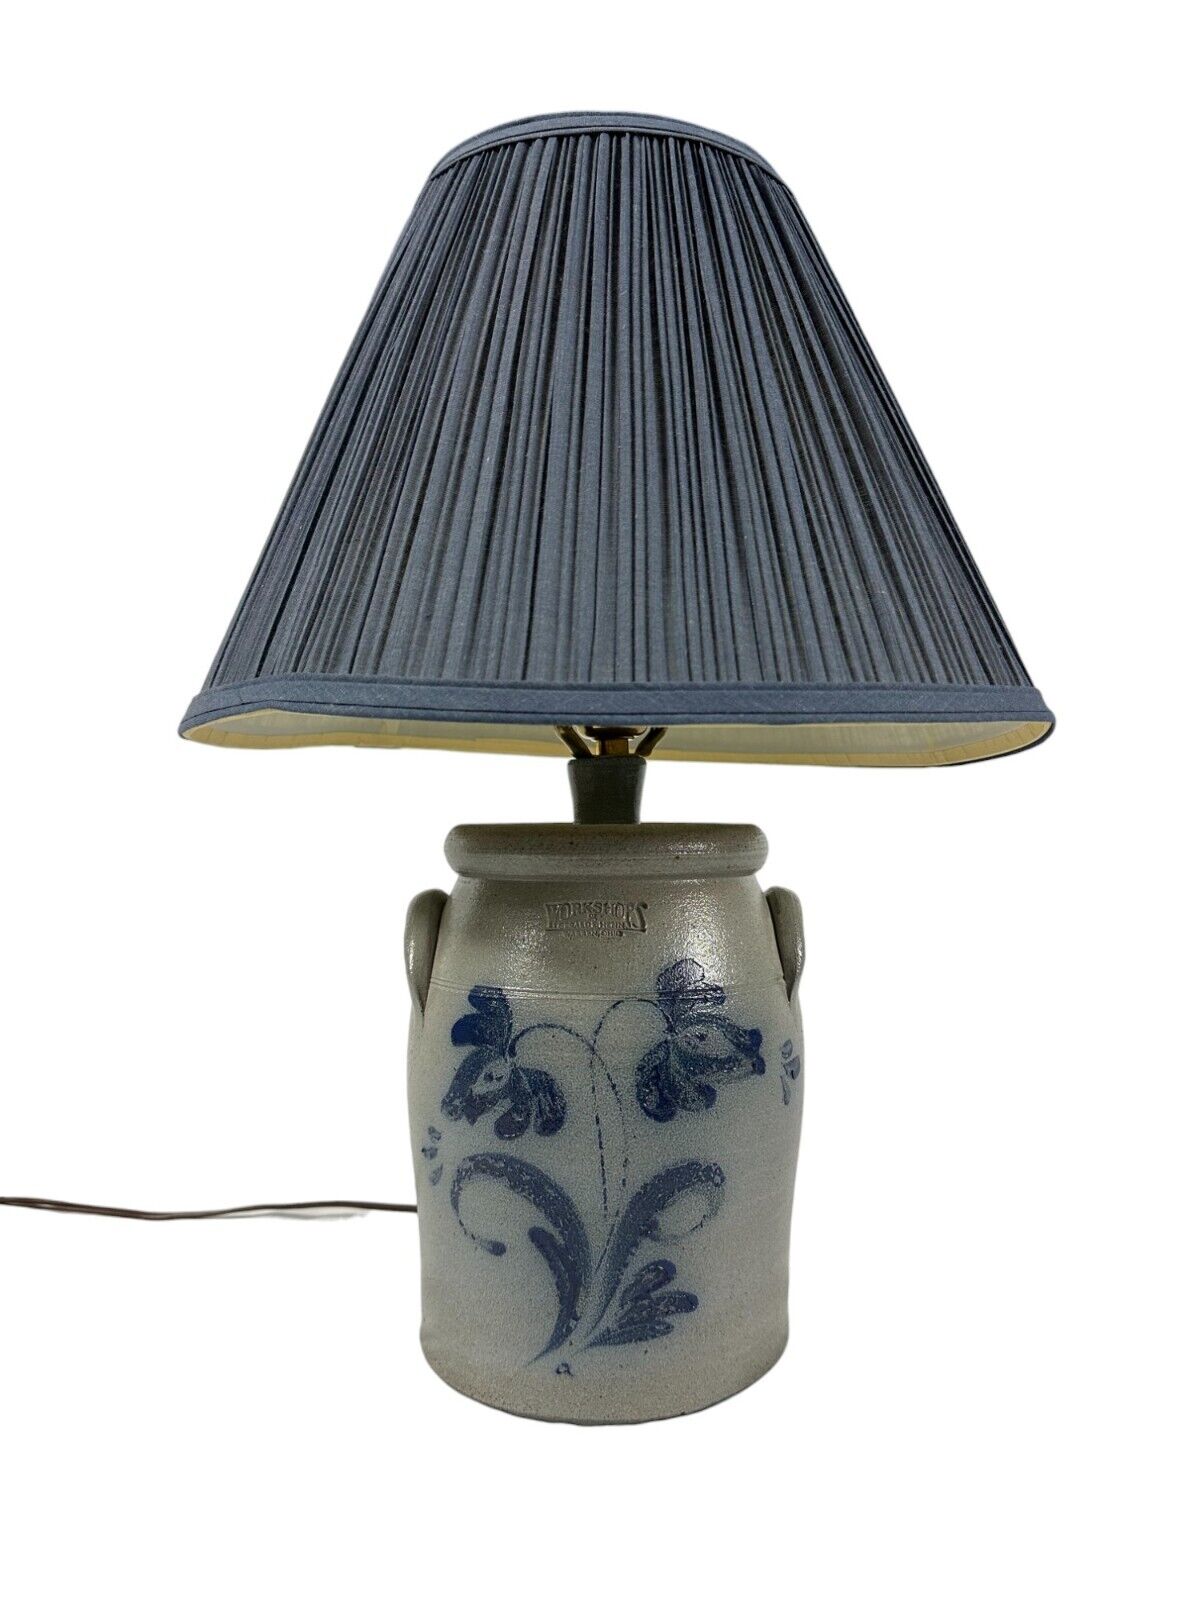 RARE Vintage Gerald Henn Workshops Table Lamp Crock Blue Stoneware Salt Glaze